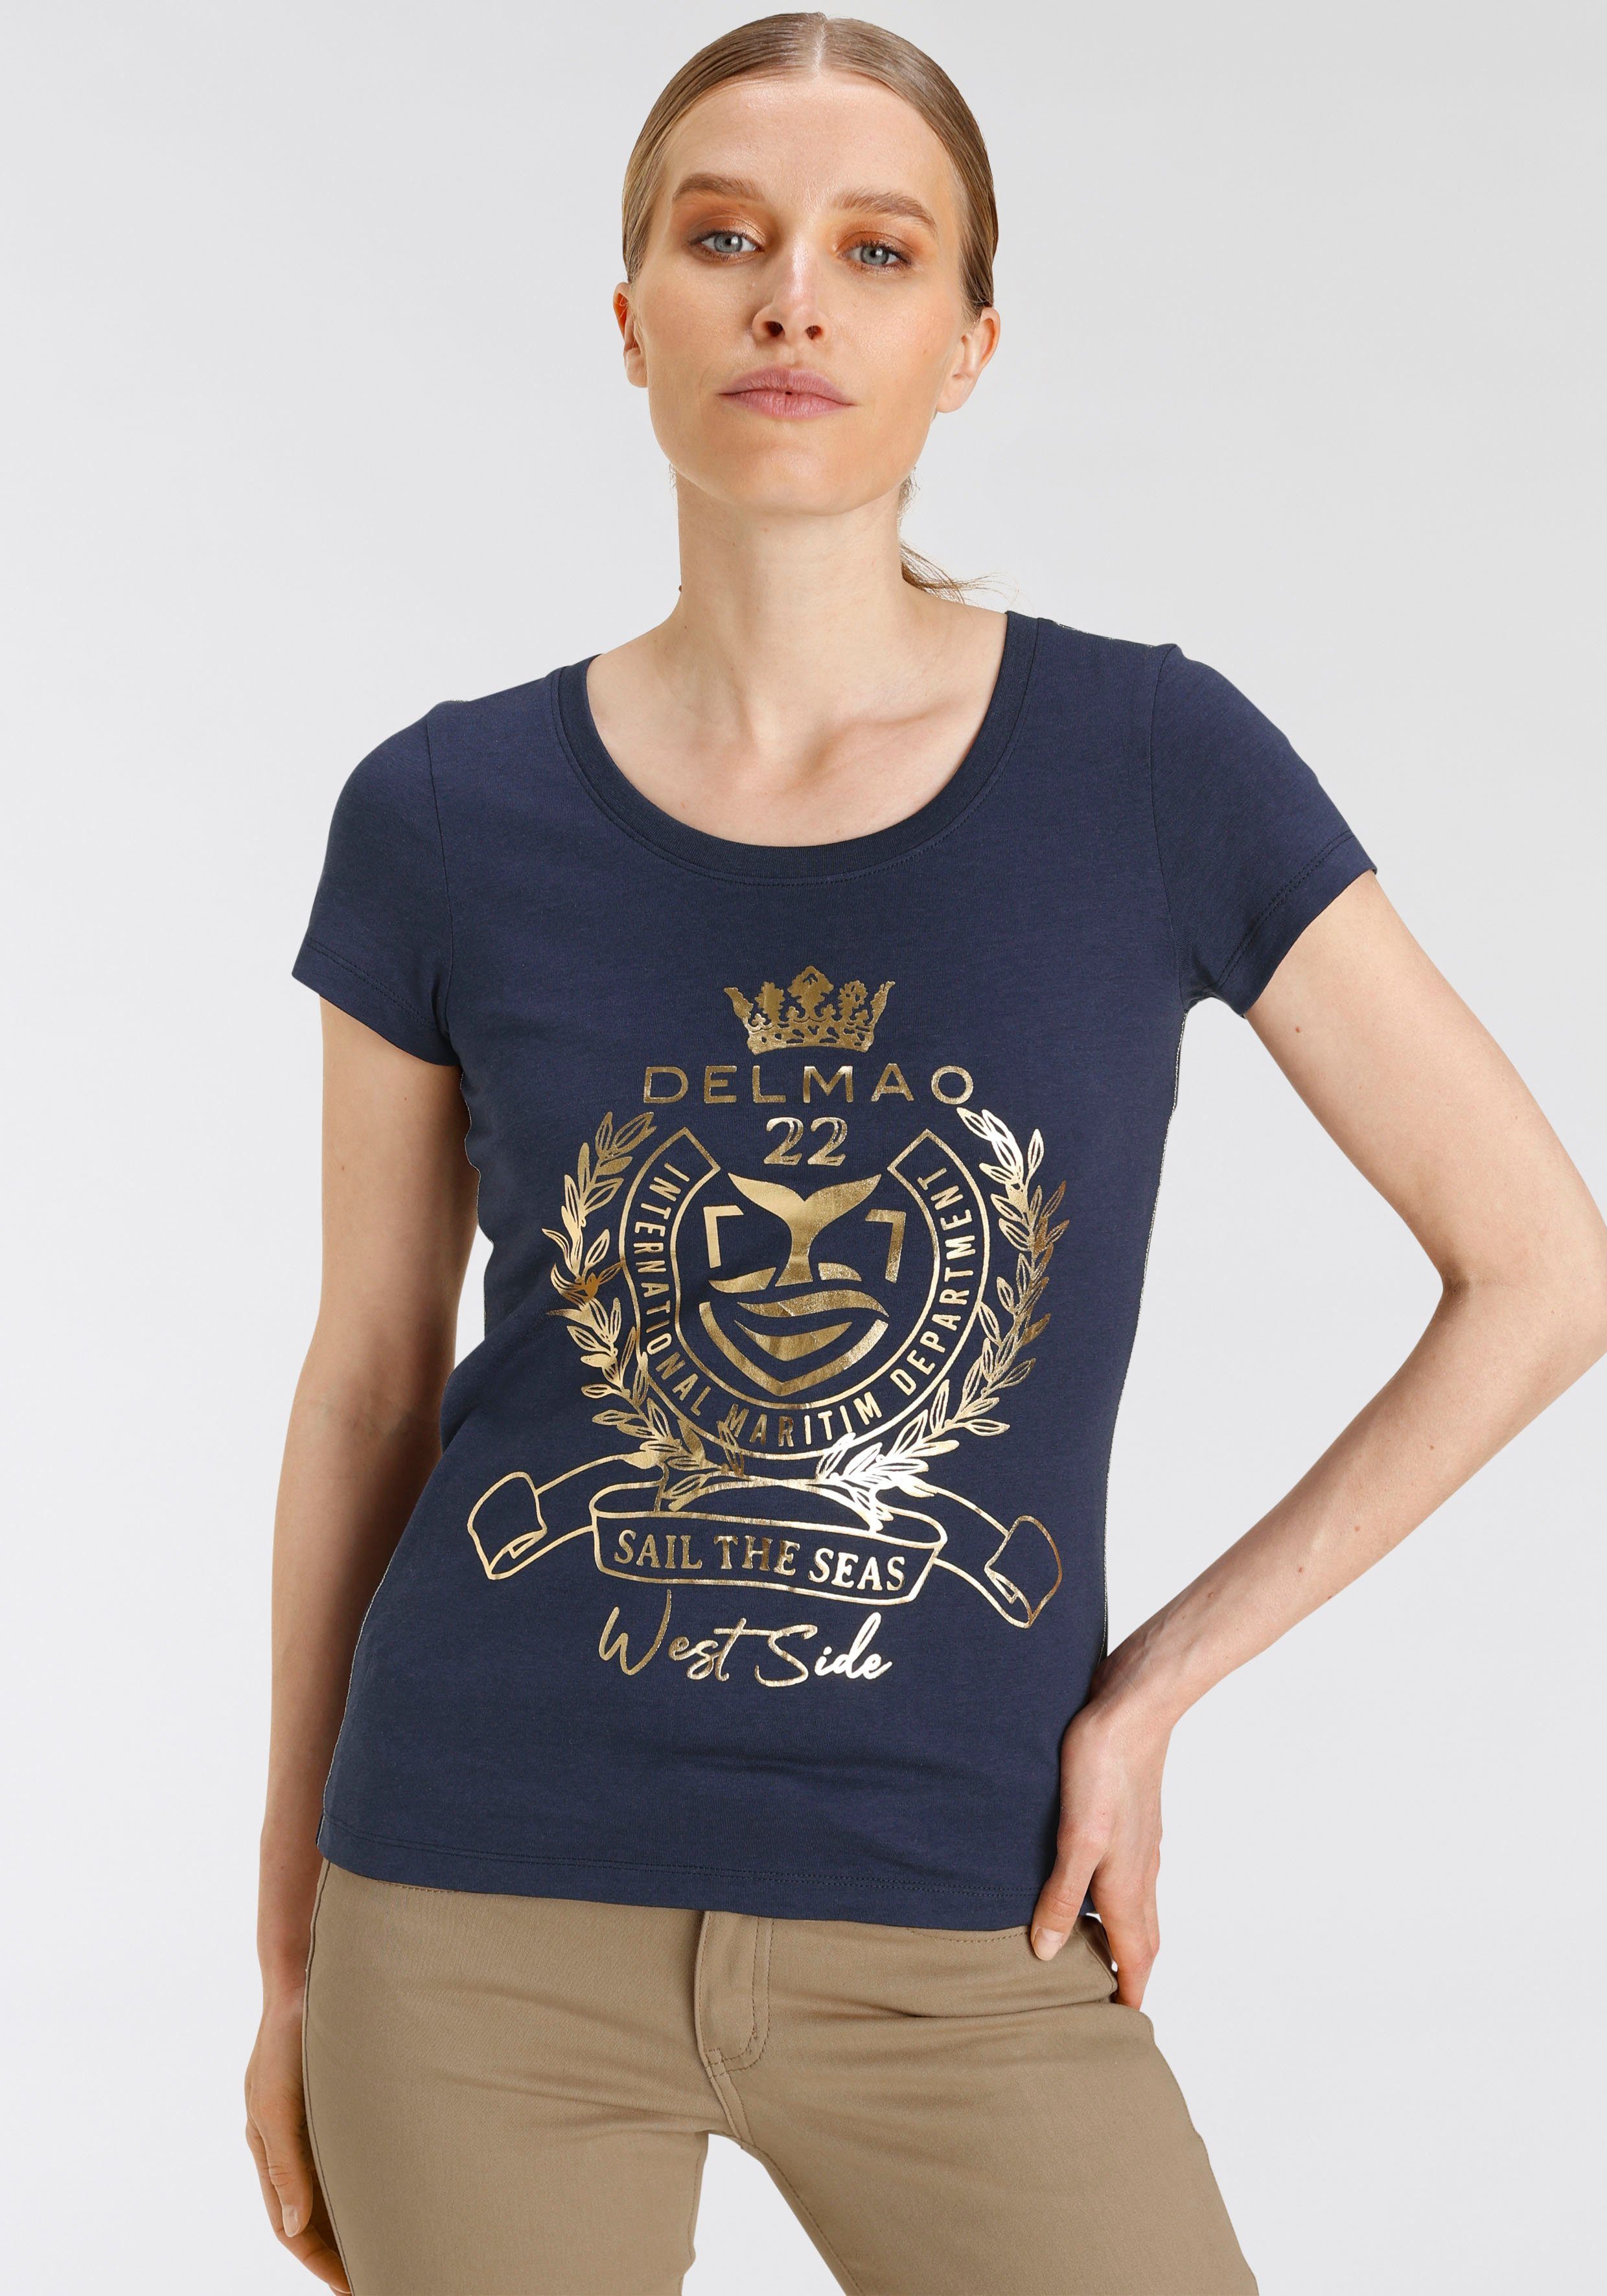 DELMAO hochwertigem, - Folienprint goldfarbenem mit MARKE! NEUE T-Shirt